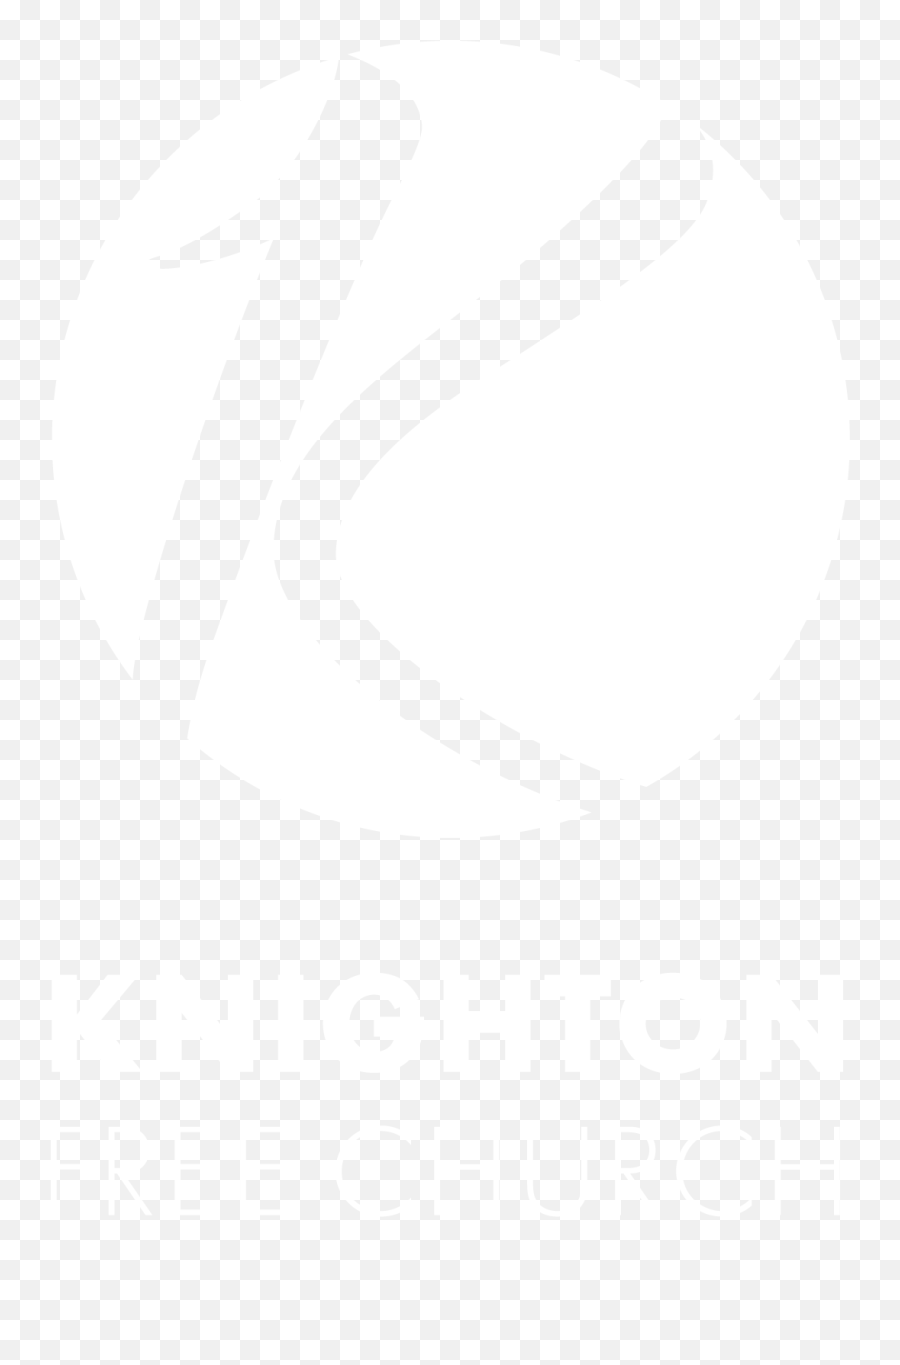 Kfc Logos - Leighton Contractors Emoji,Kfc Logo